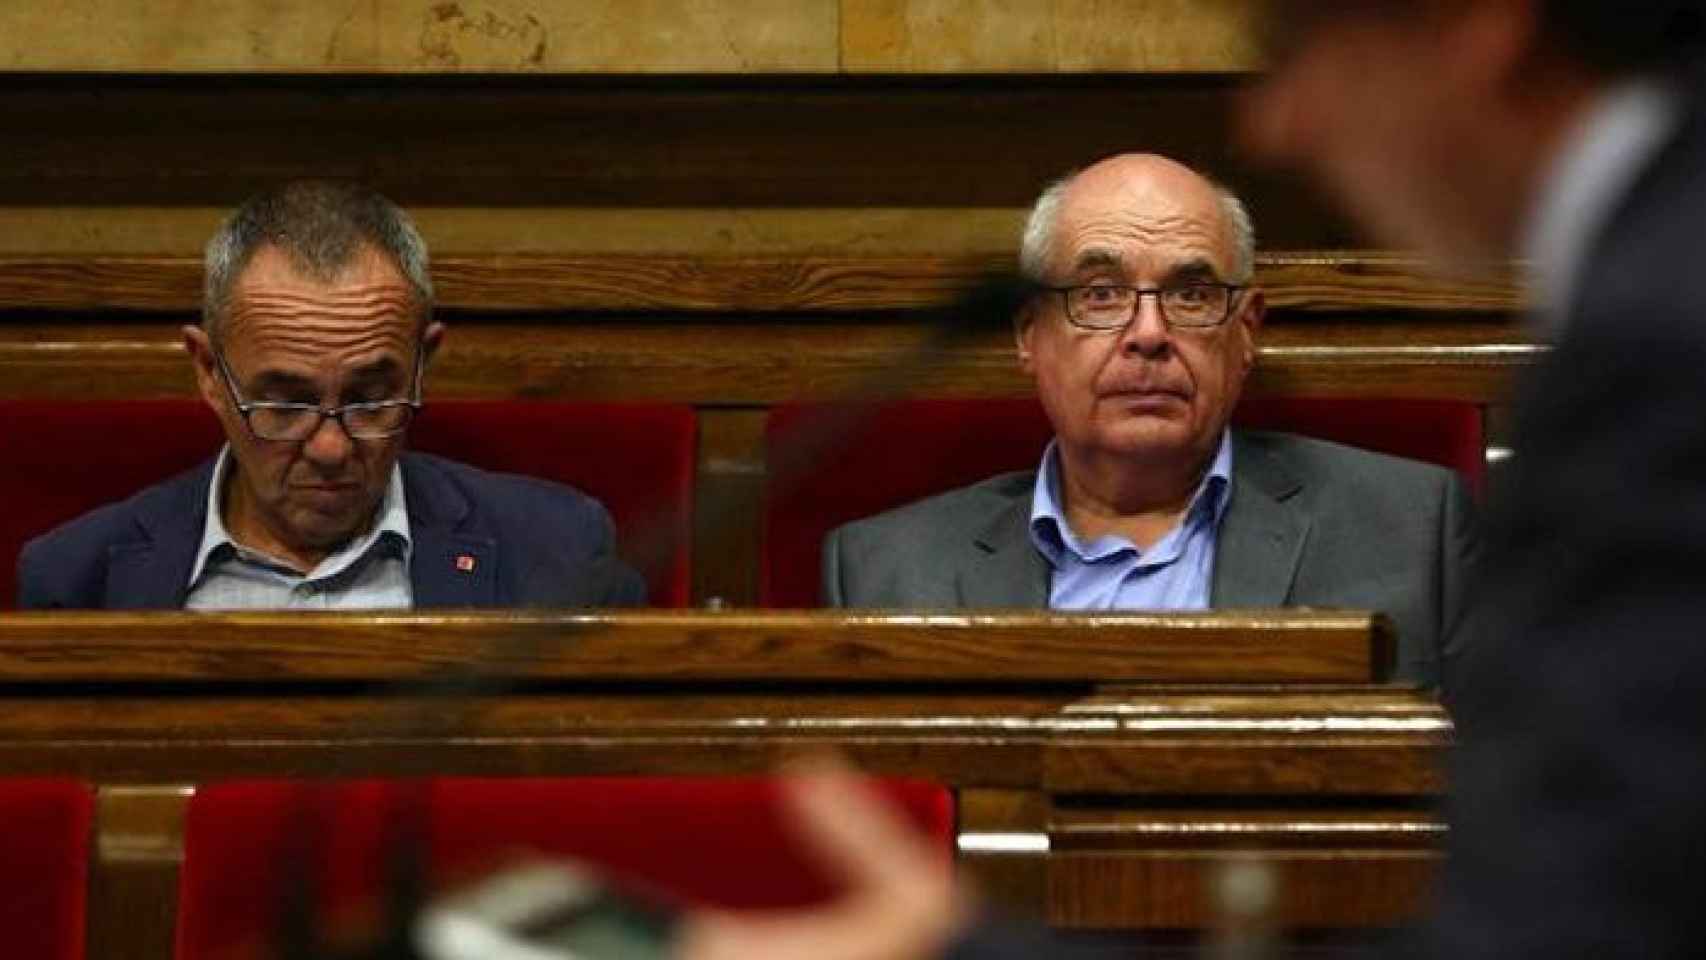 Joan Coscubiela (i) y Lluís Rabell (d), de CSQP, escuchan al presidente Carles Puigdemont en el Parlament / EFE